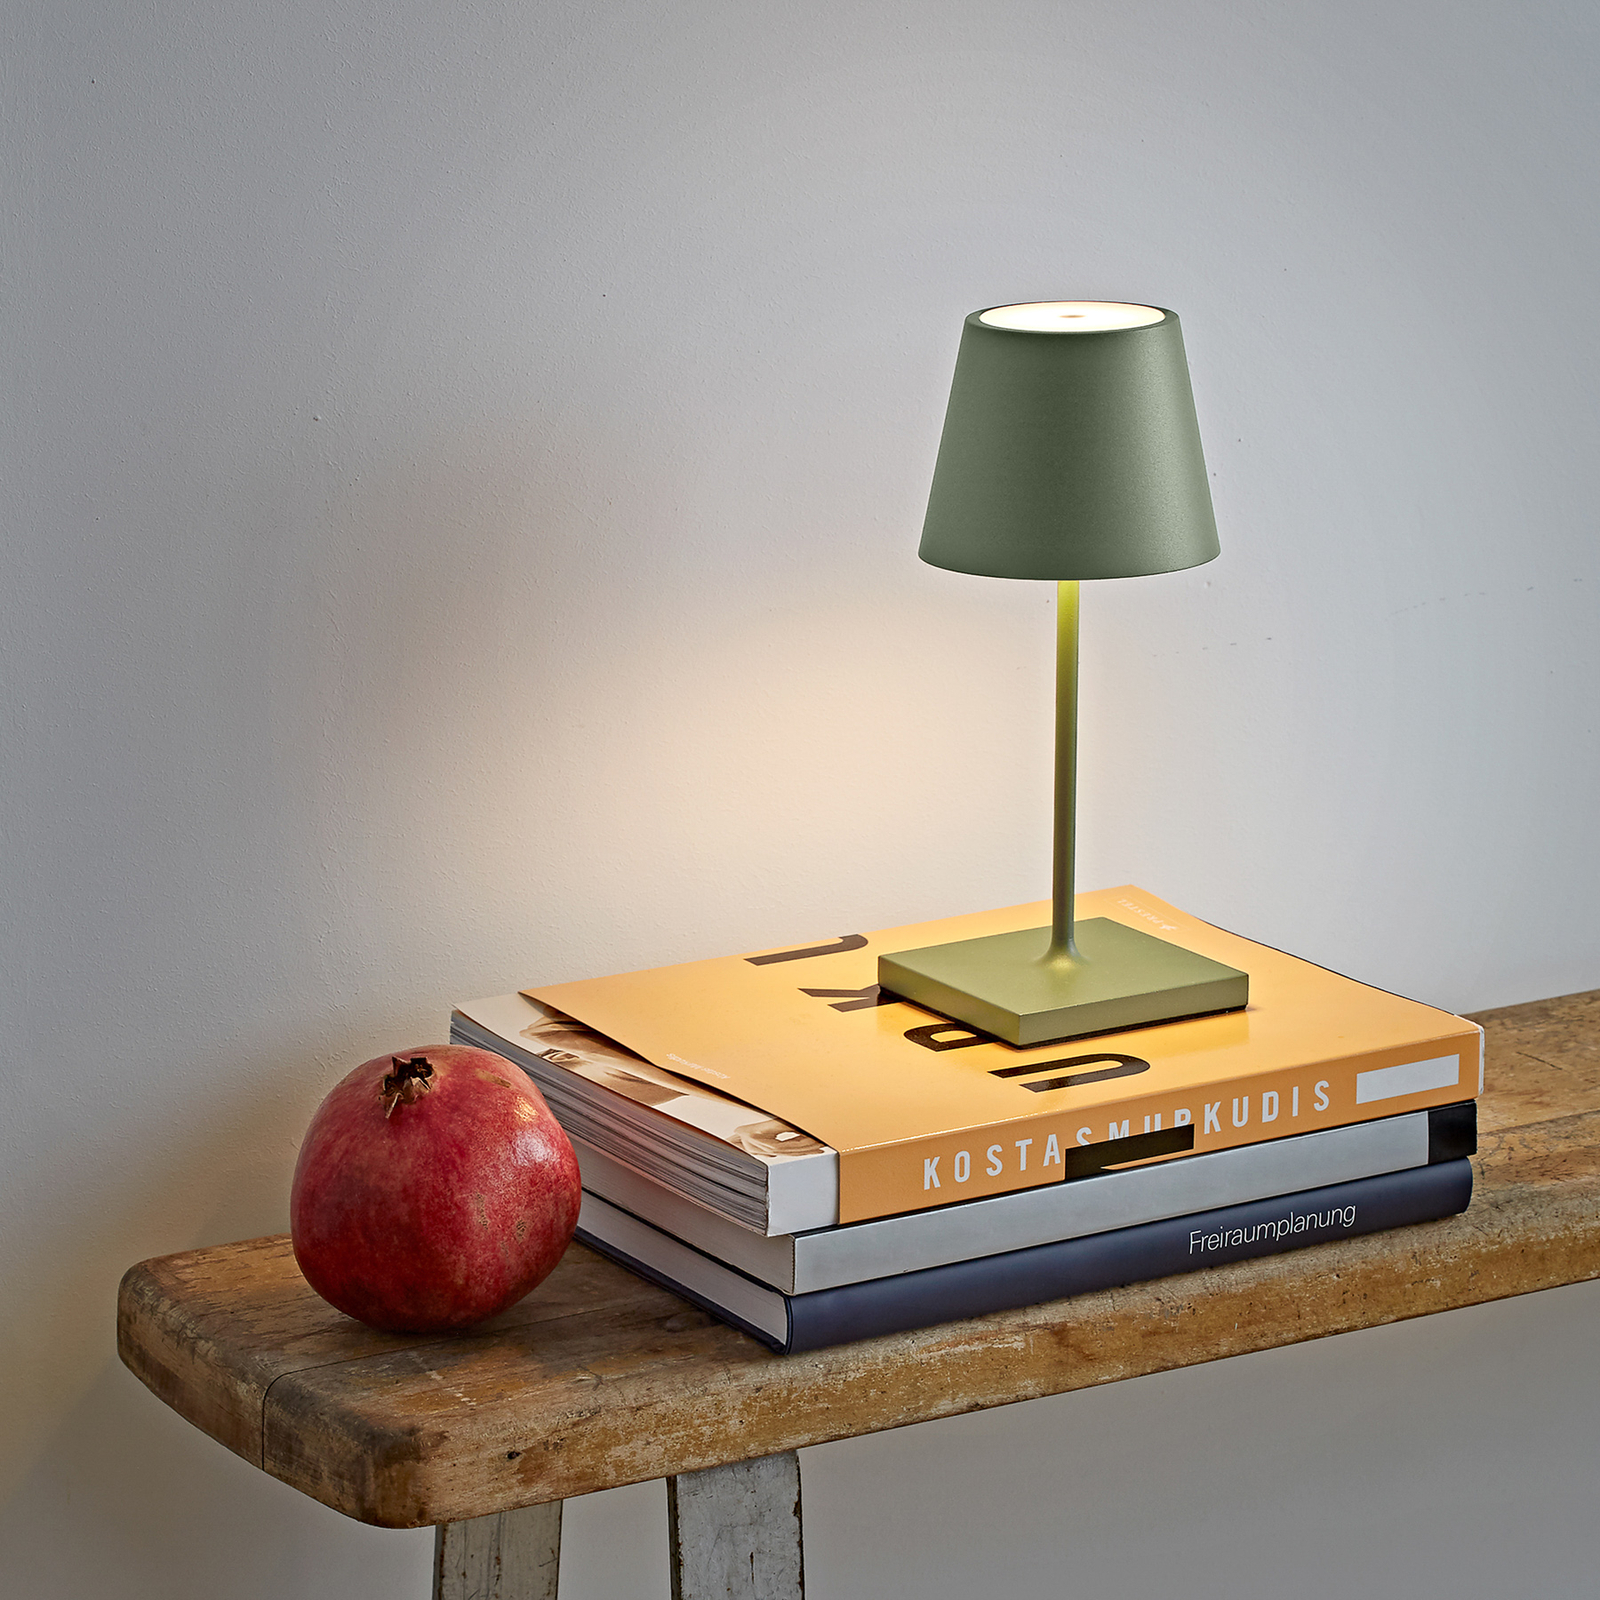 Lampe de table LED rechargeable Nuindie mini, ronde, USB-C, vert sauge